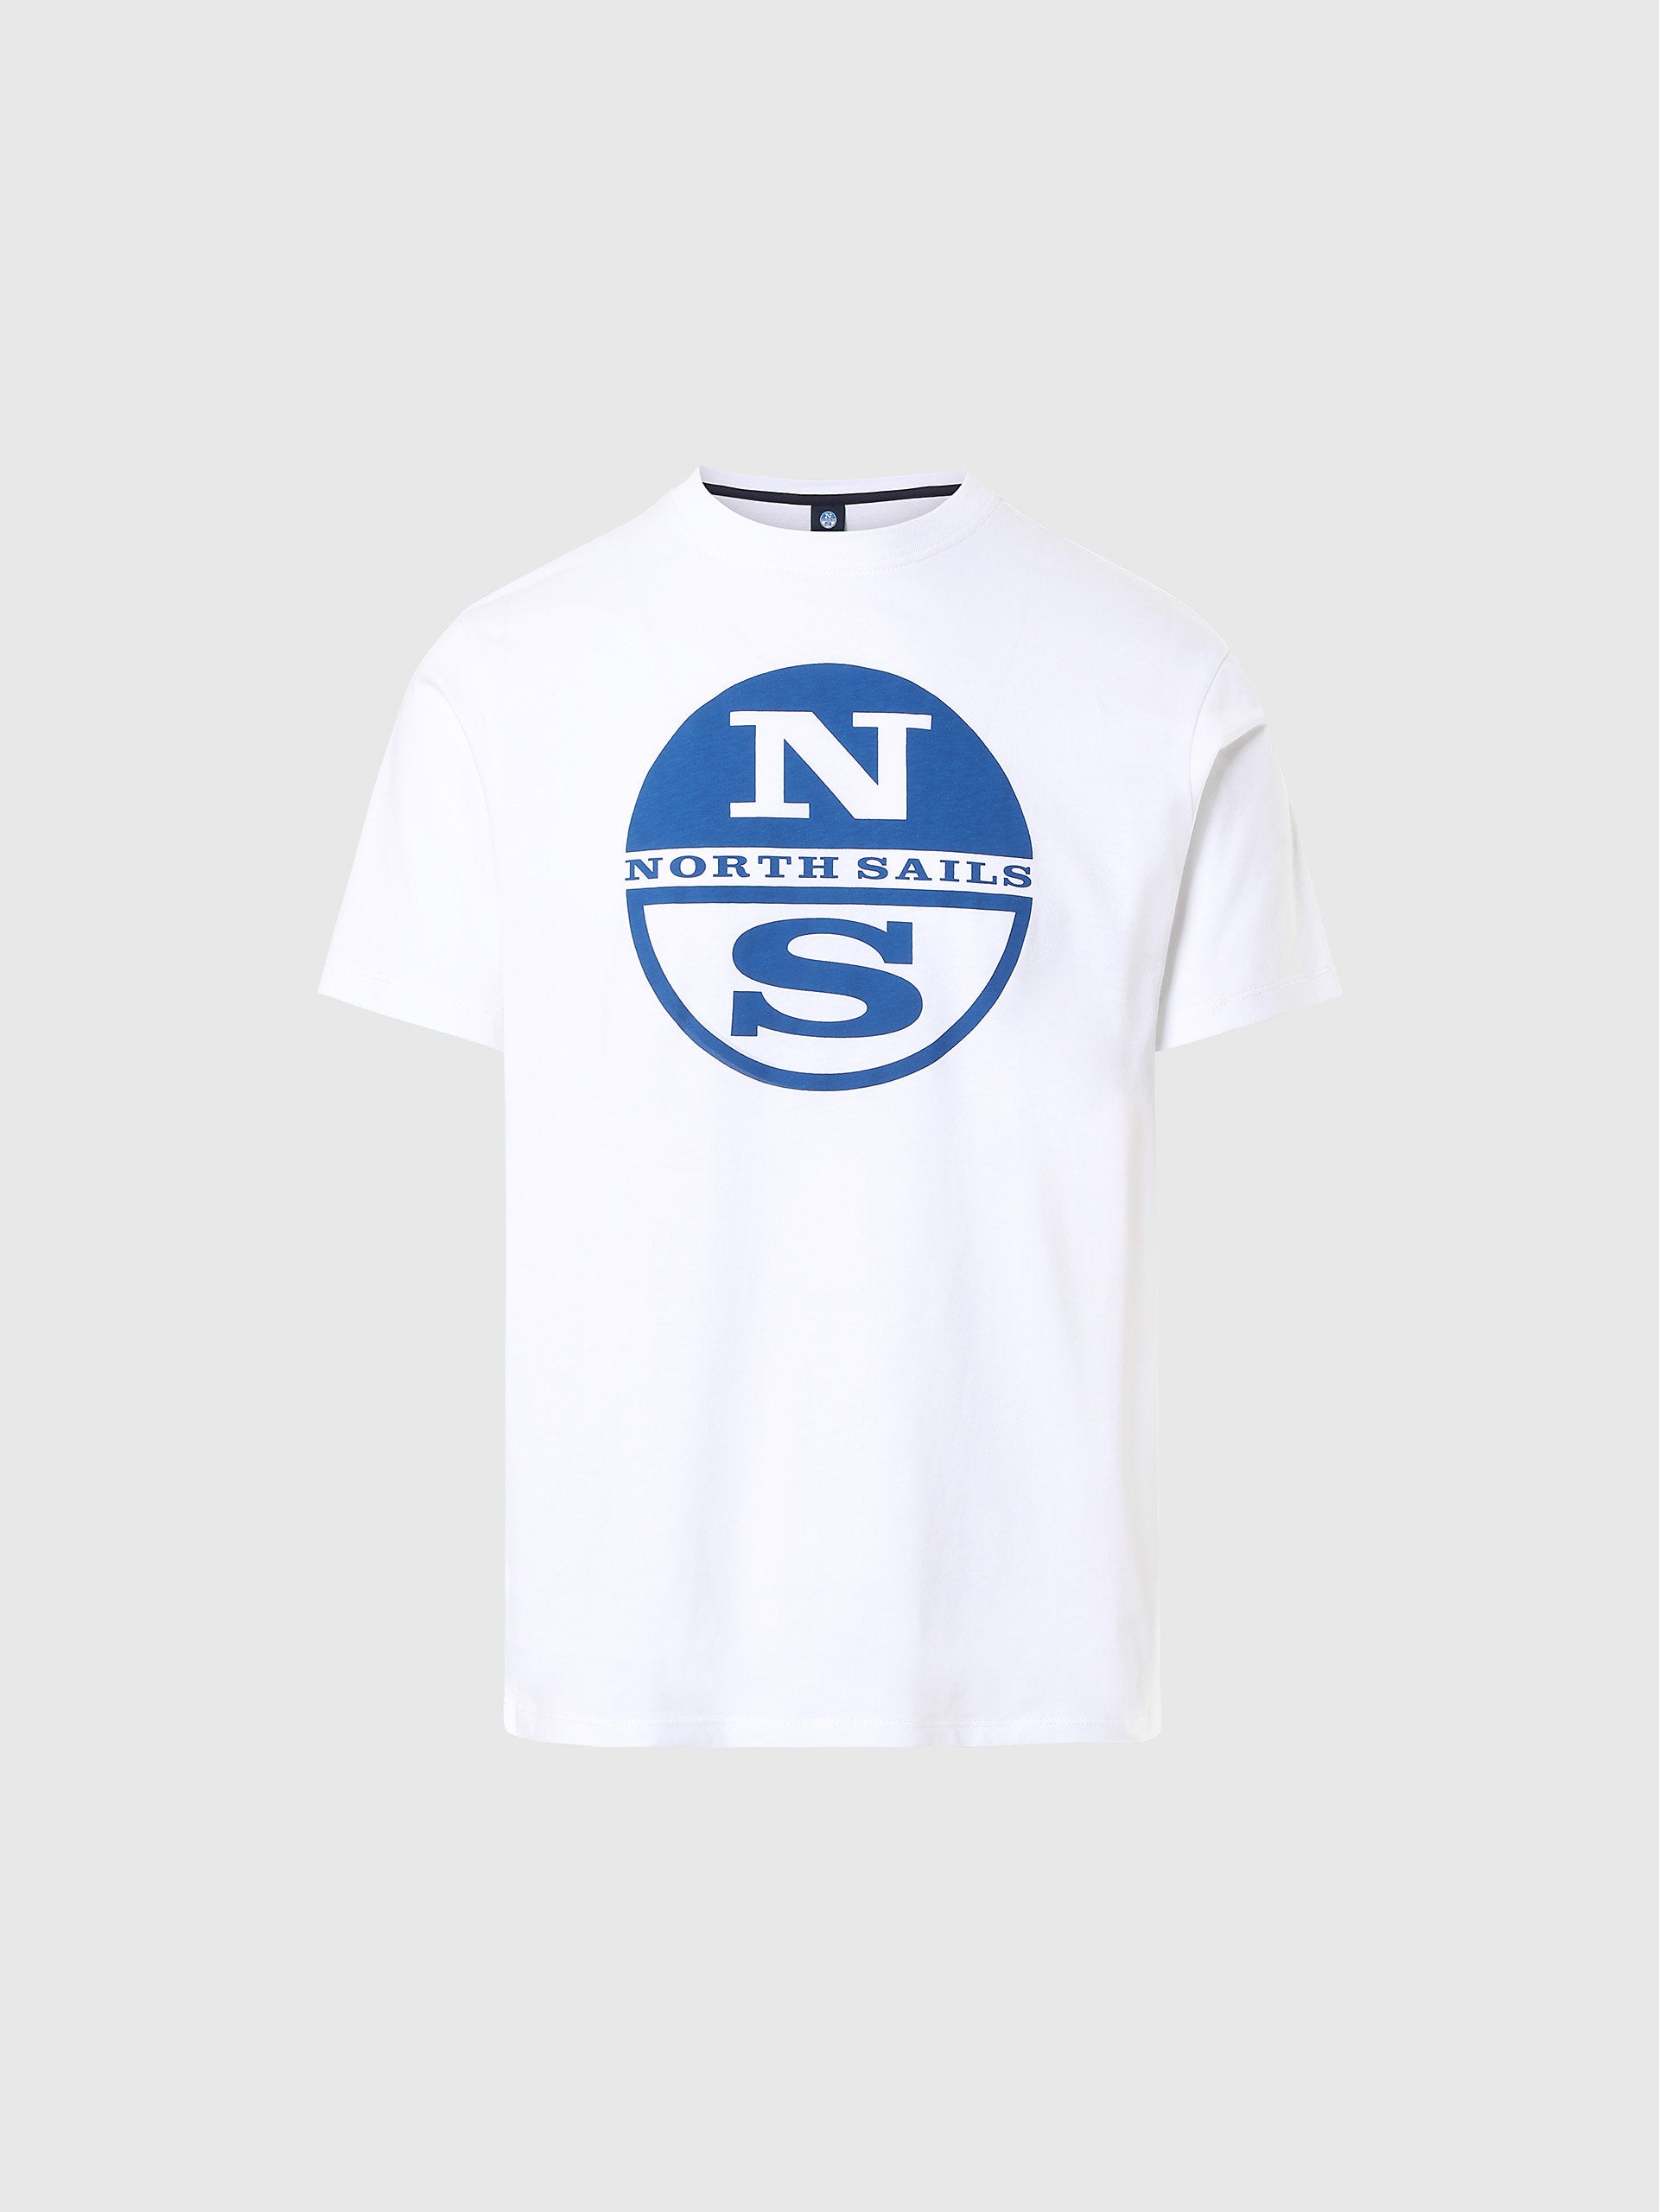 North Sails - T-shirt con stampa maxi logoNorth SailsWhiteM